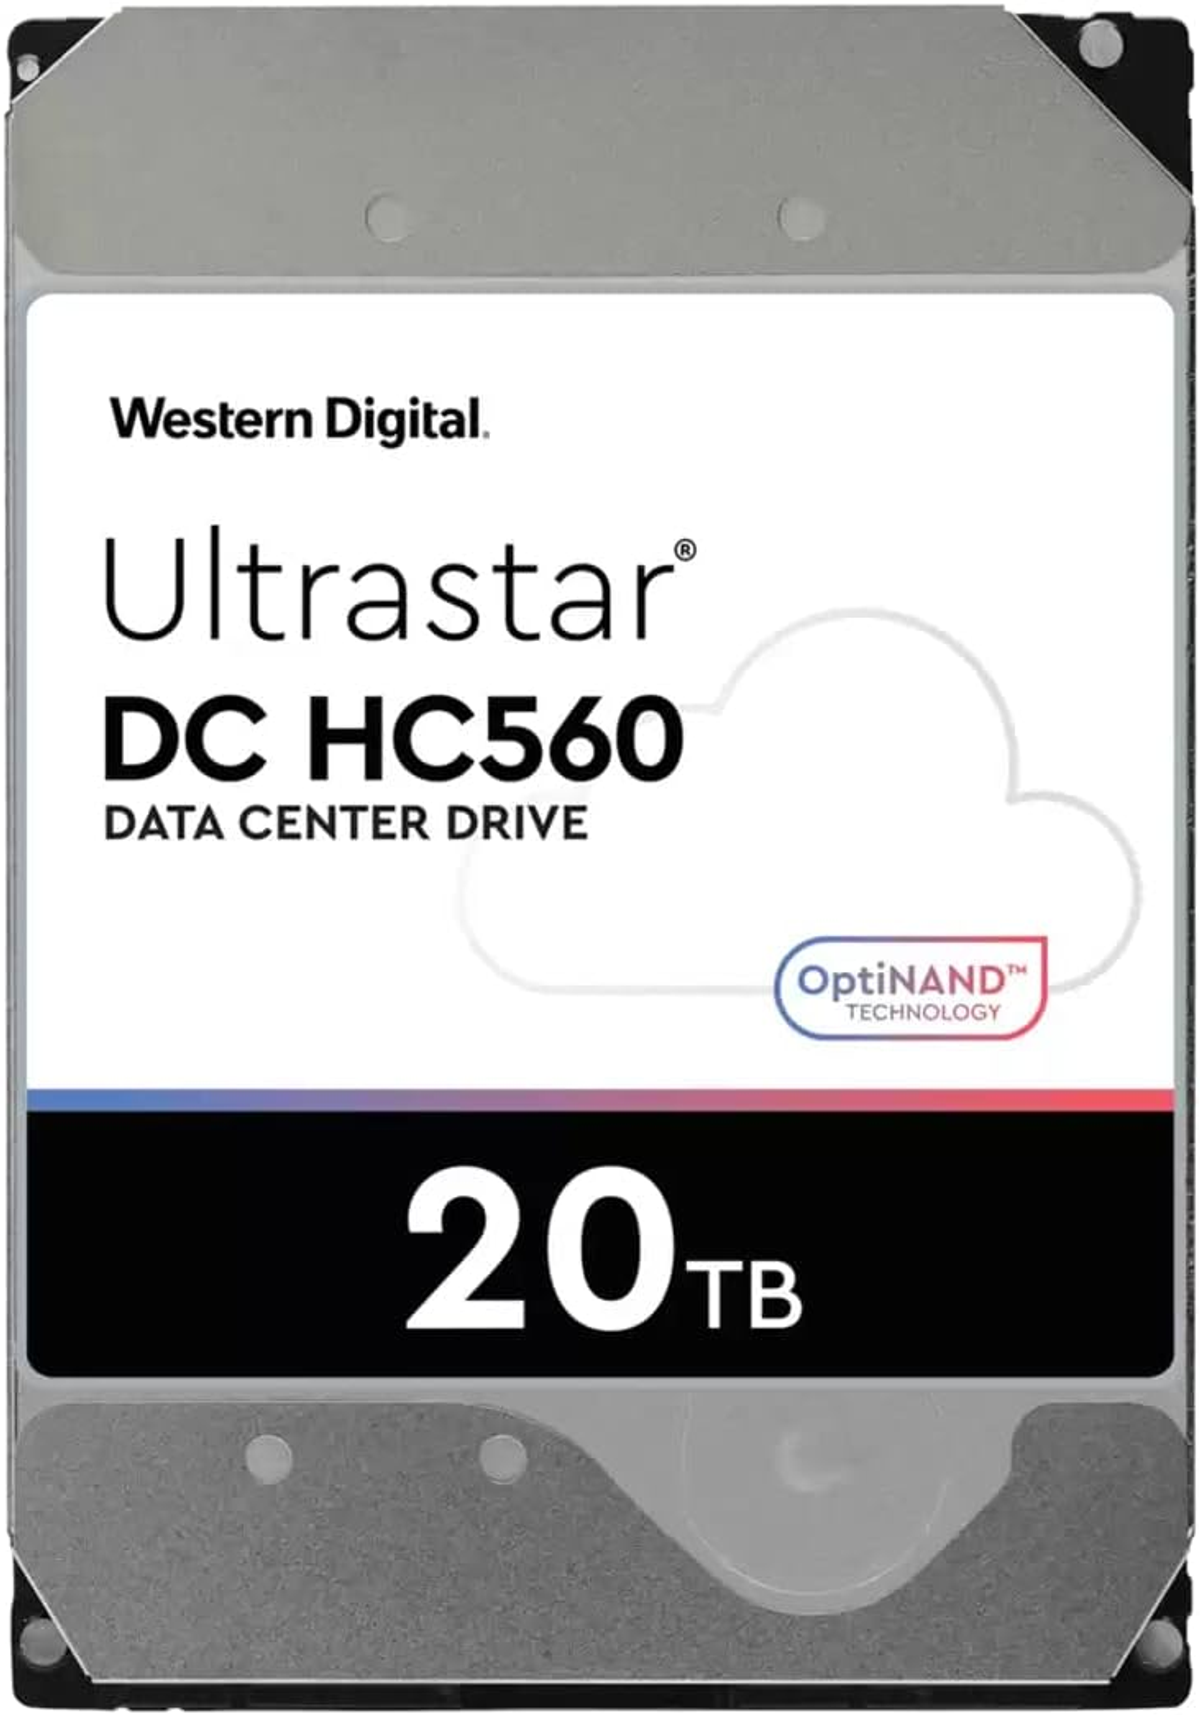 WESTERN DIGITAL WD 512MB 7200RPM Zoll, 20 3,5 Ultrastar intern TB, Ent., HC560 DH HDD, 20TB